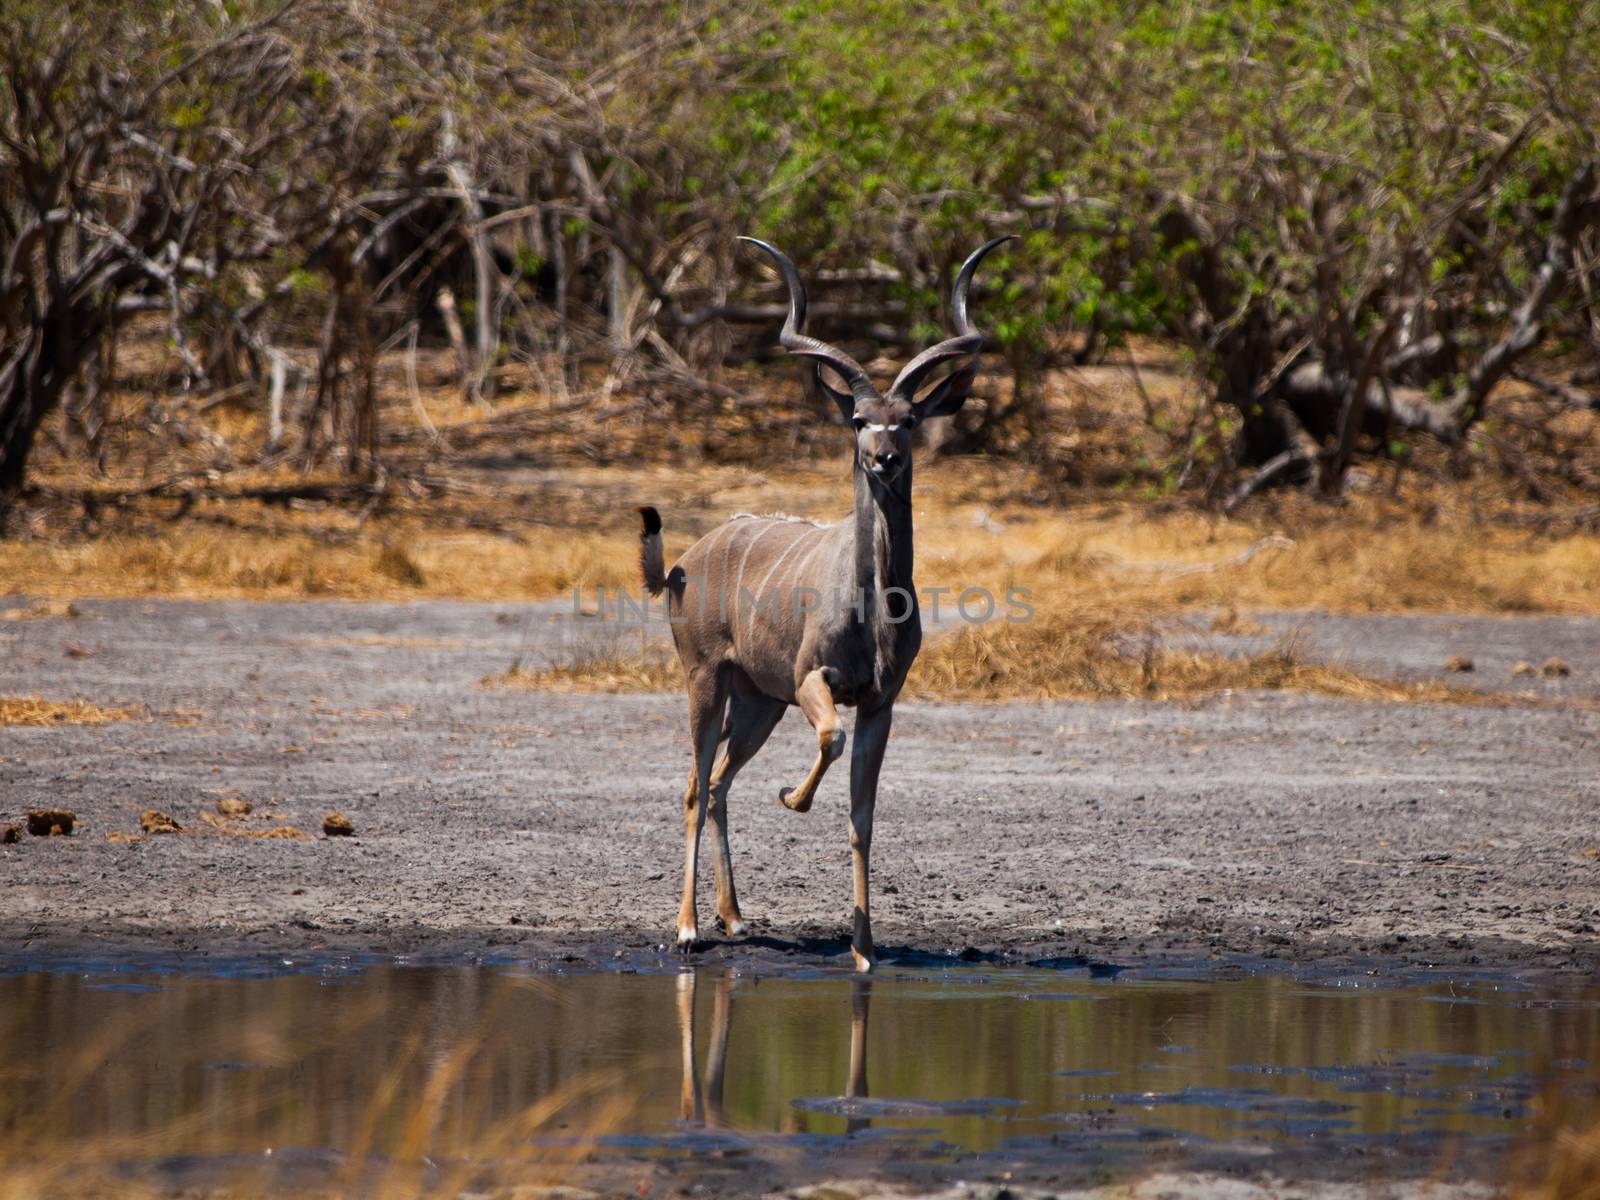 Kudu antelope at water hole